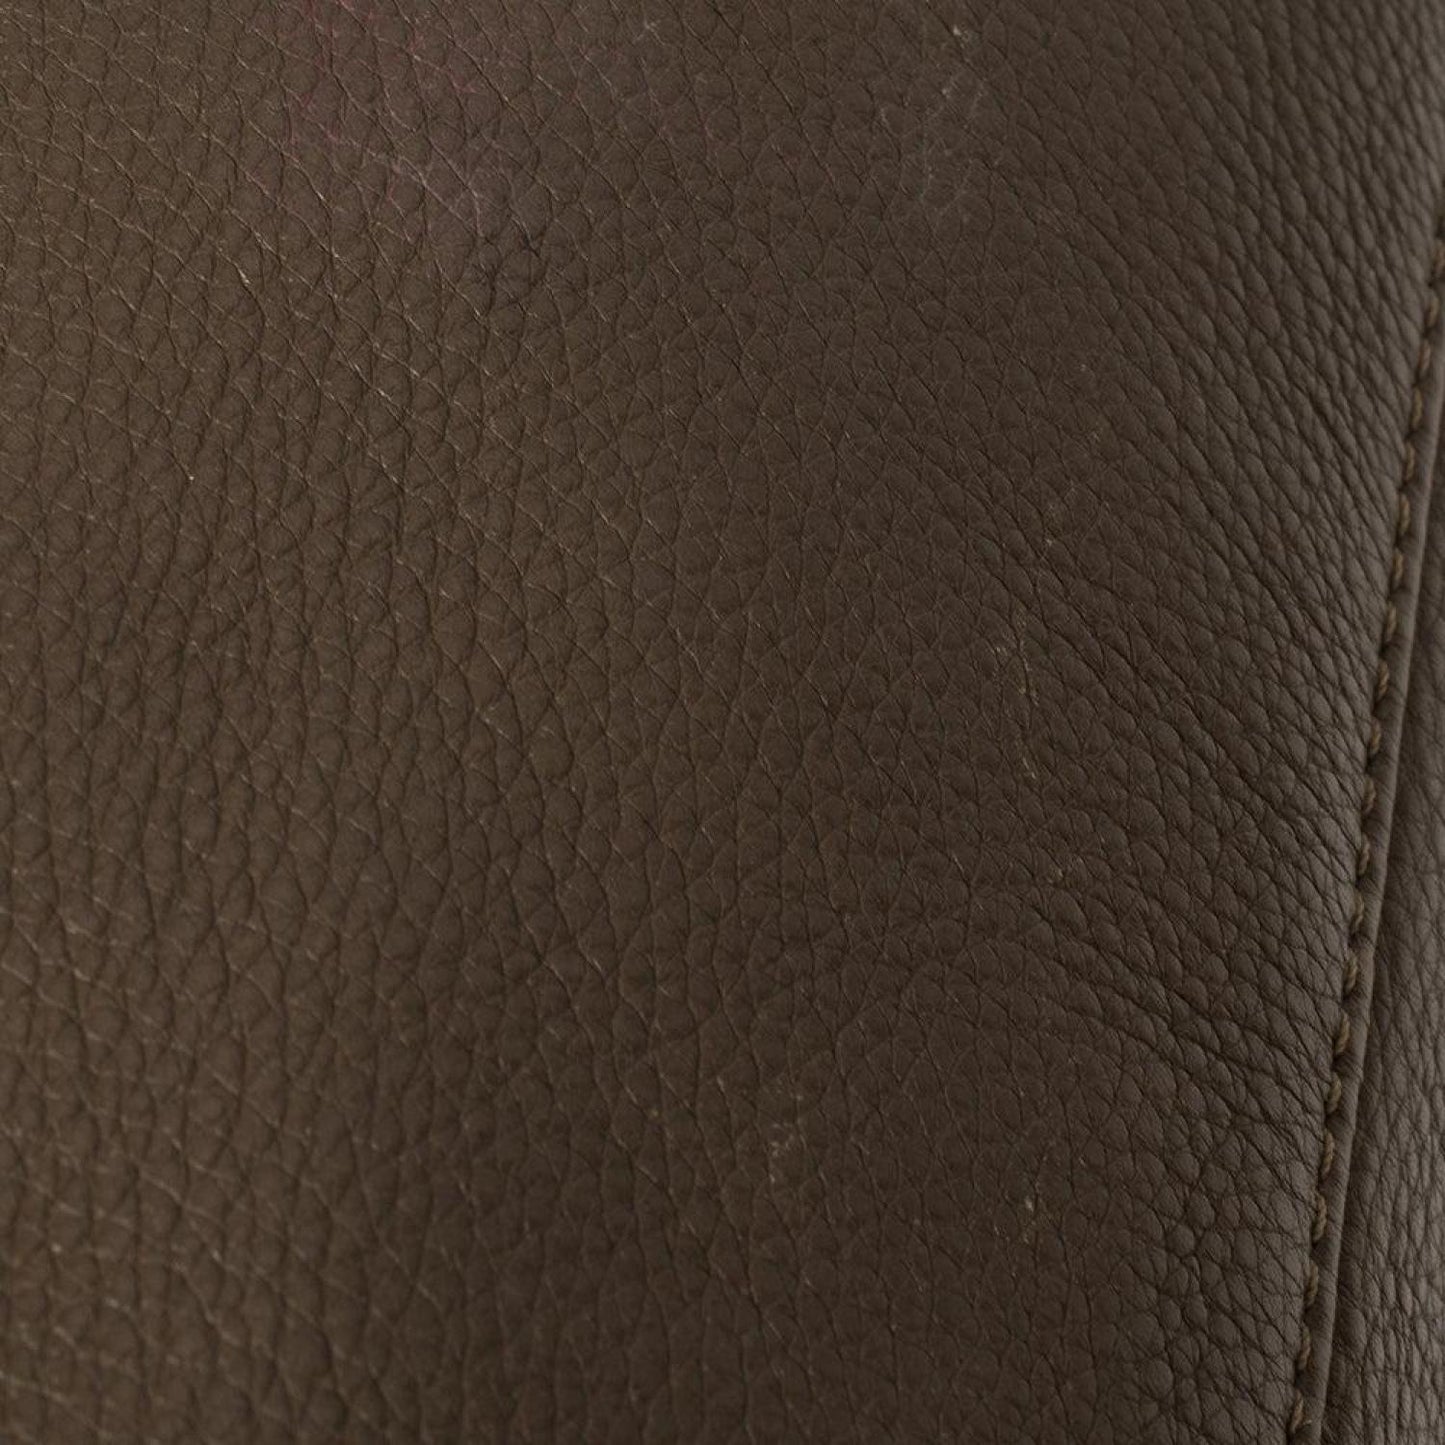 Michael Kors Dark /brown Soft Leather Skorpios Hobo